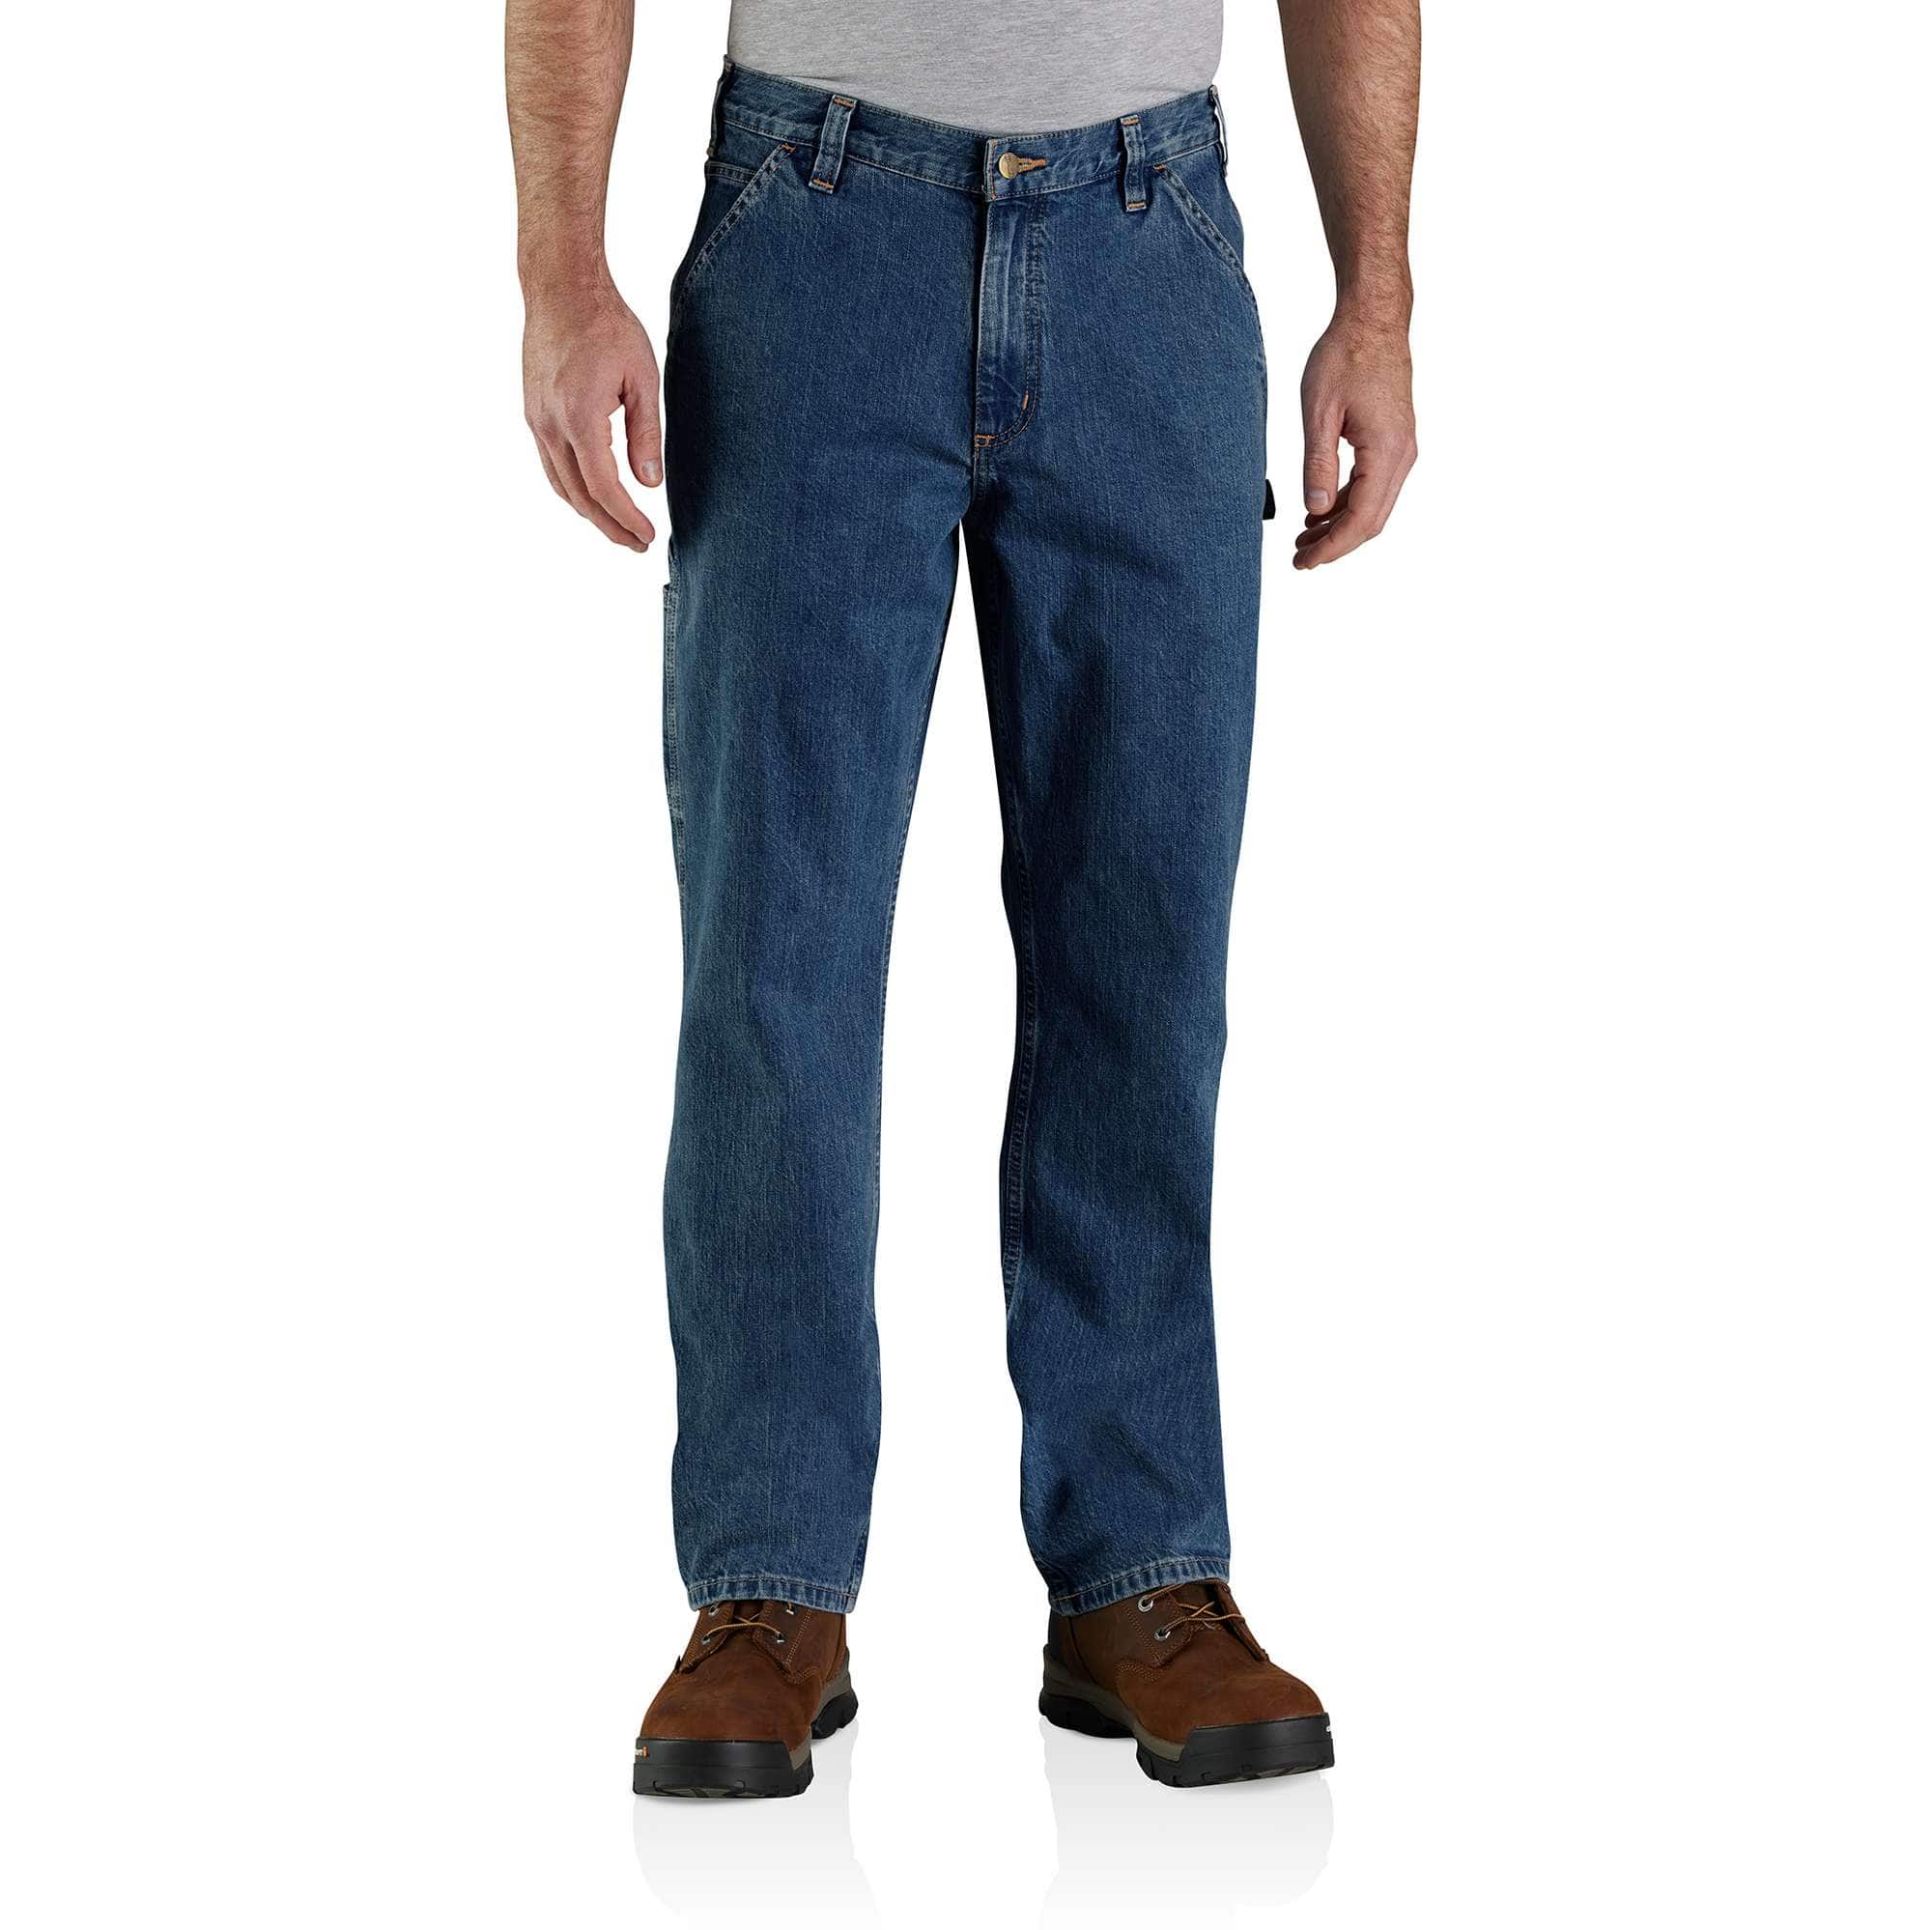 Men's Uniform Work Jeans